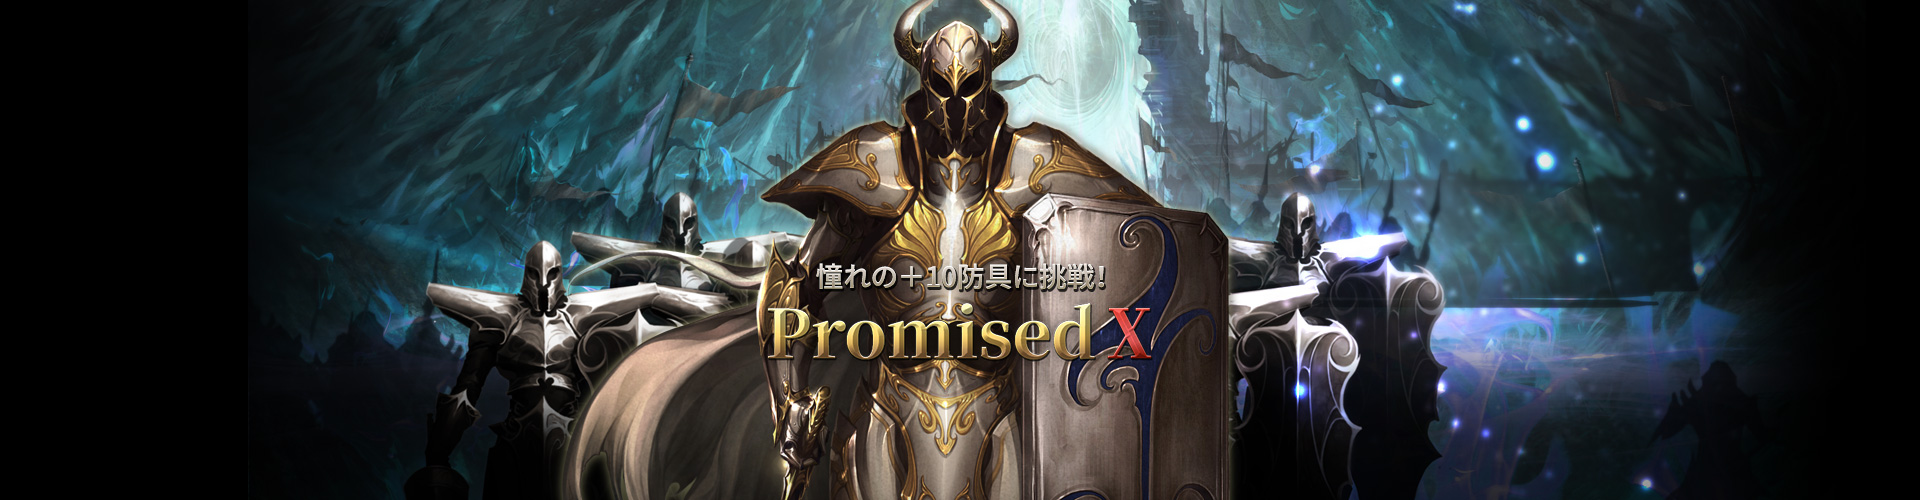 Promised X